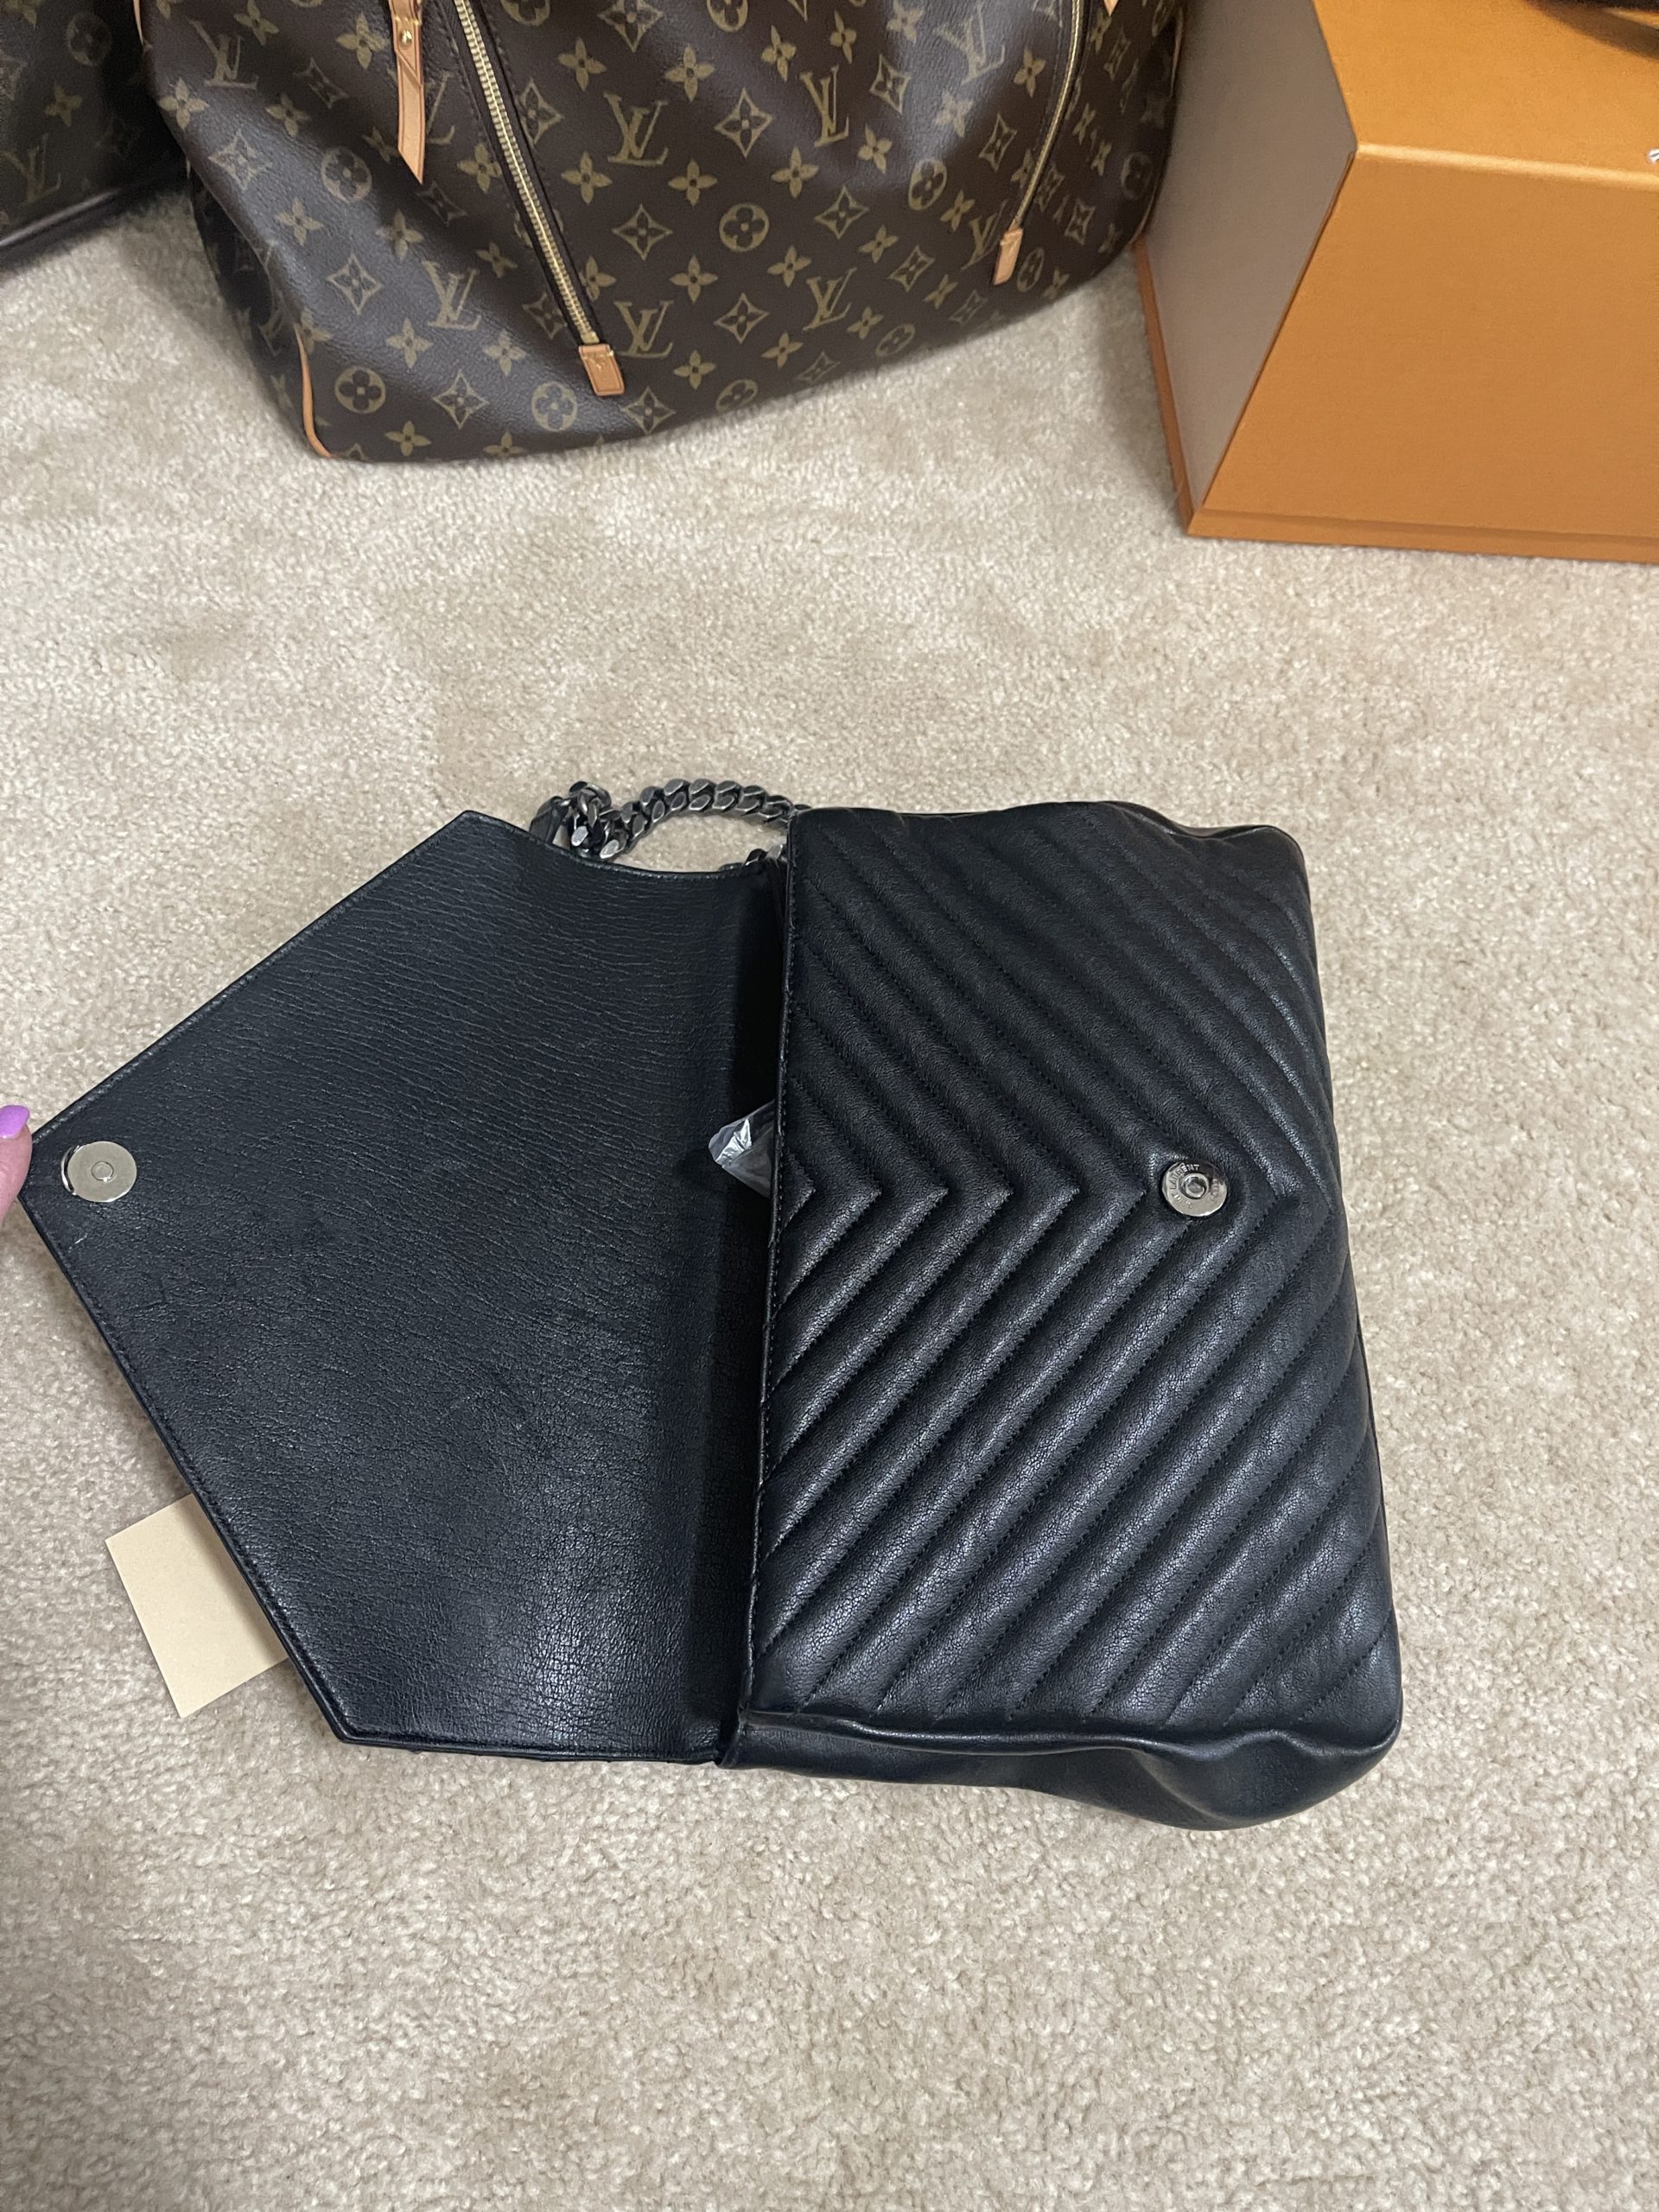 YSL Saint Laurent College Large Quilted Black Leather V-Flap Shoulder Bag -  A World Of Goods For You, LLC